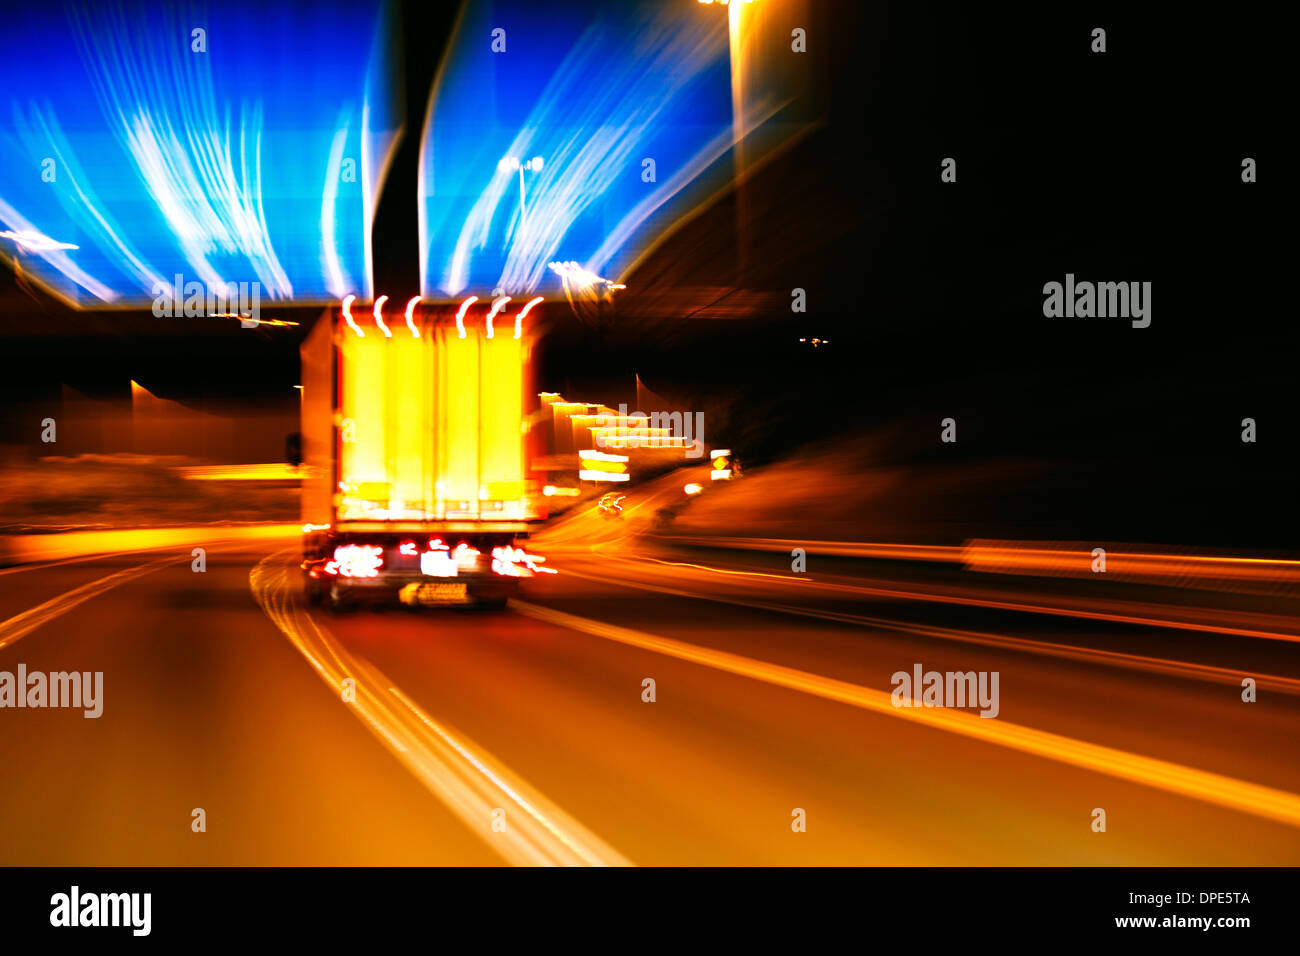 Une impression de style photo de mouvement du trafic sur une autoroute de nuit Banque D'Images